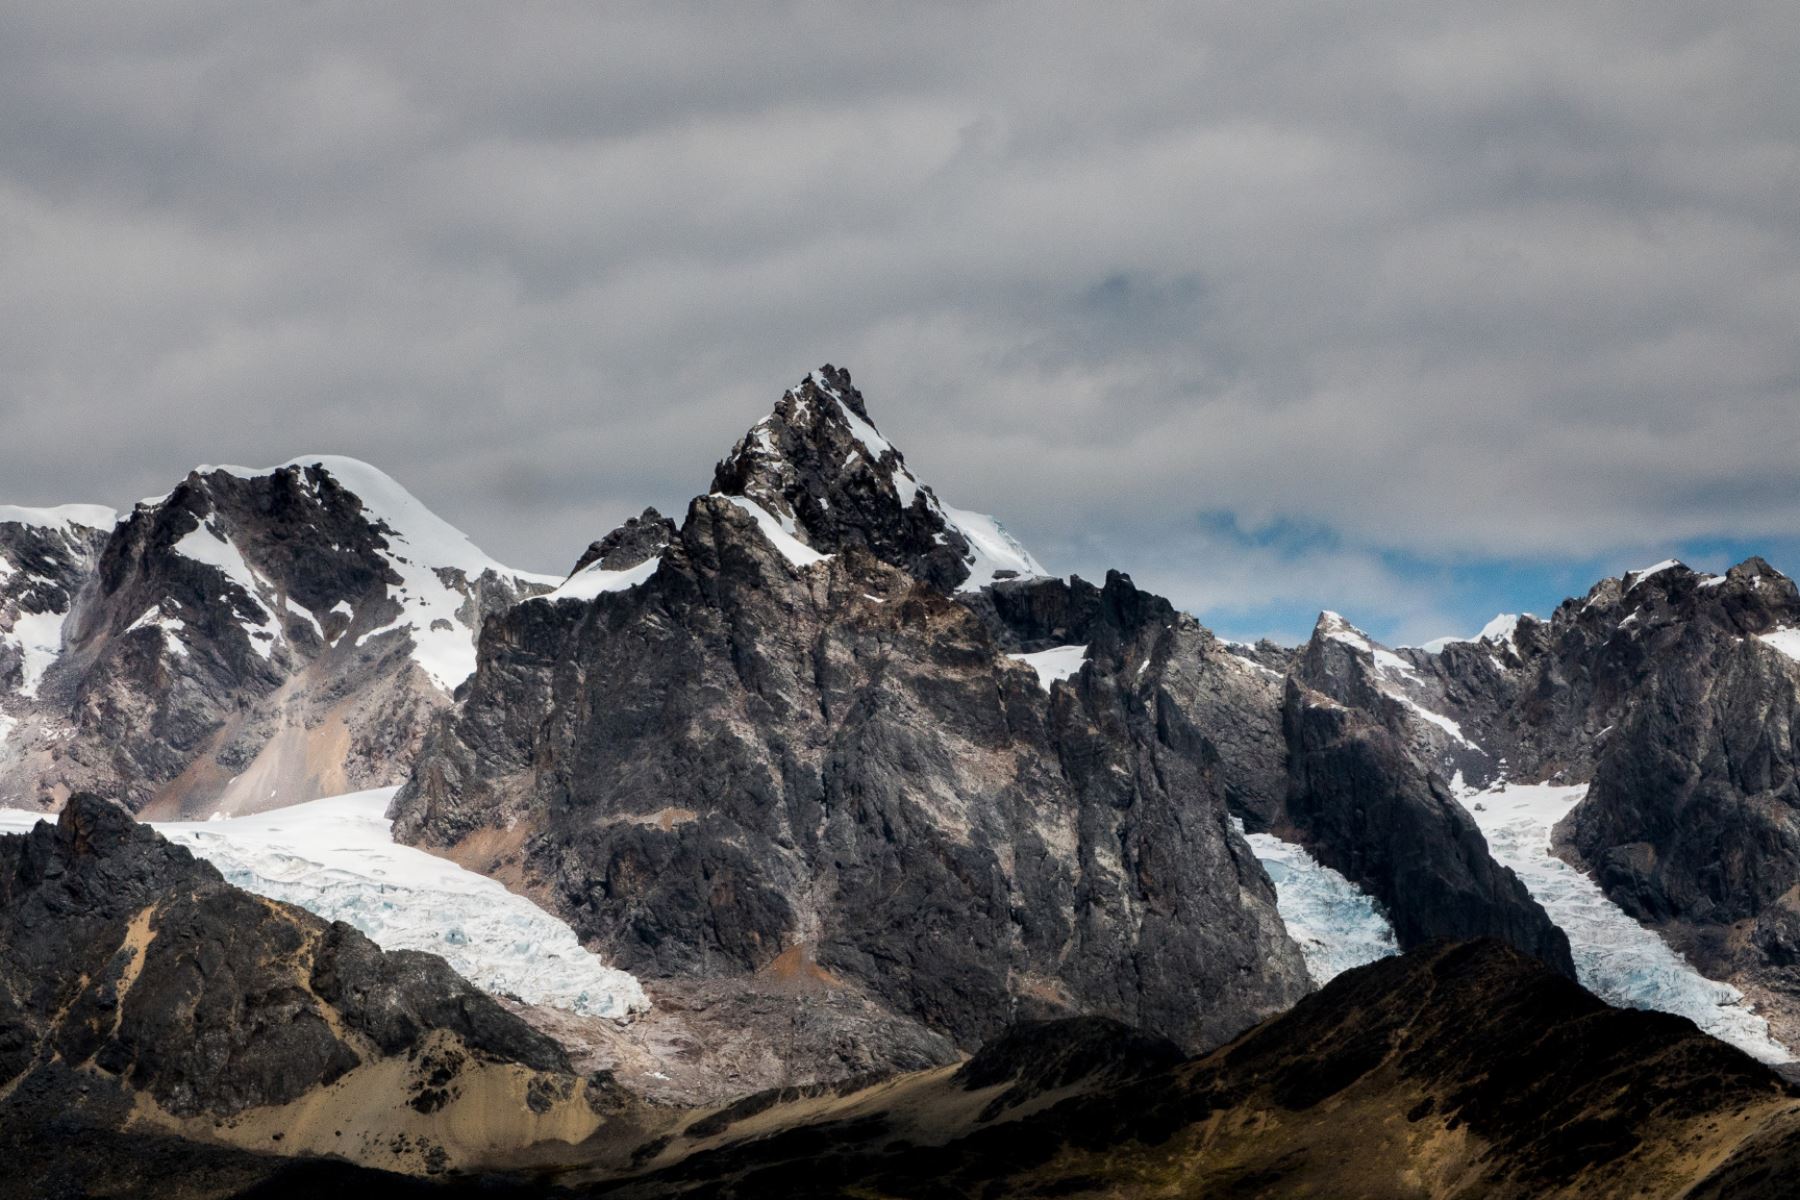 La nueva Área de Conservación Regional Ausangate ayuda a conservar los ecosistemas de glaciares y pajonales altoandinos, así como su fauna emblemática como la vicuña y el cóndor andino. Foto: SPDA